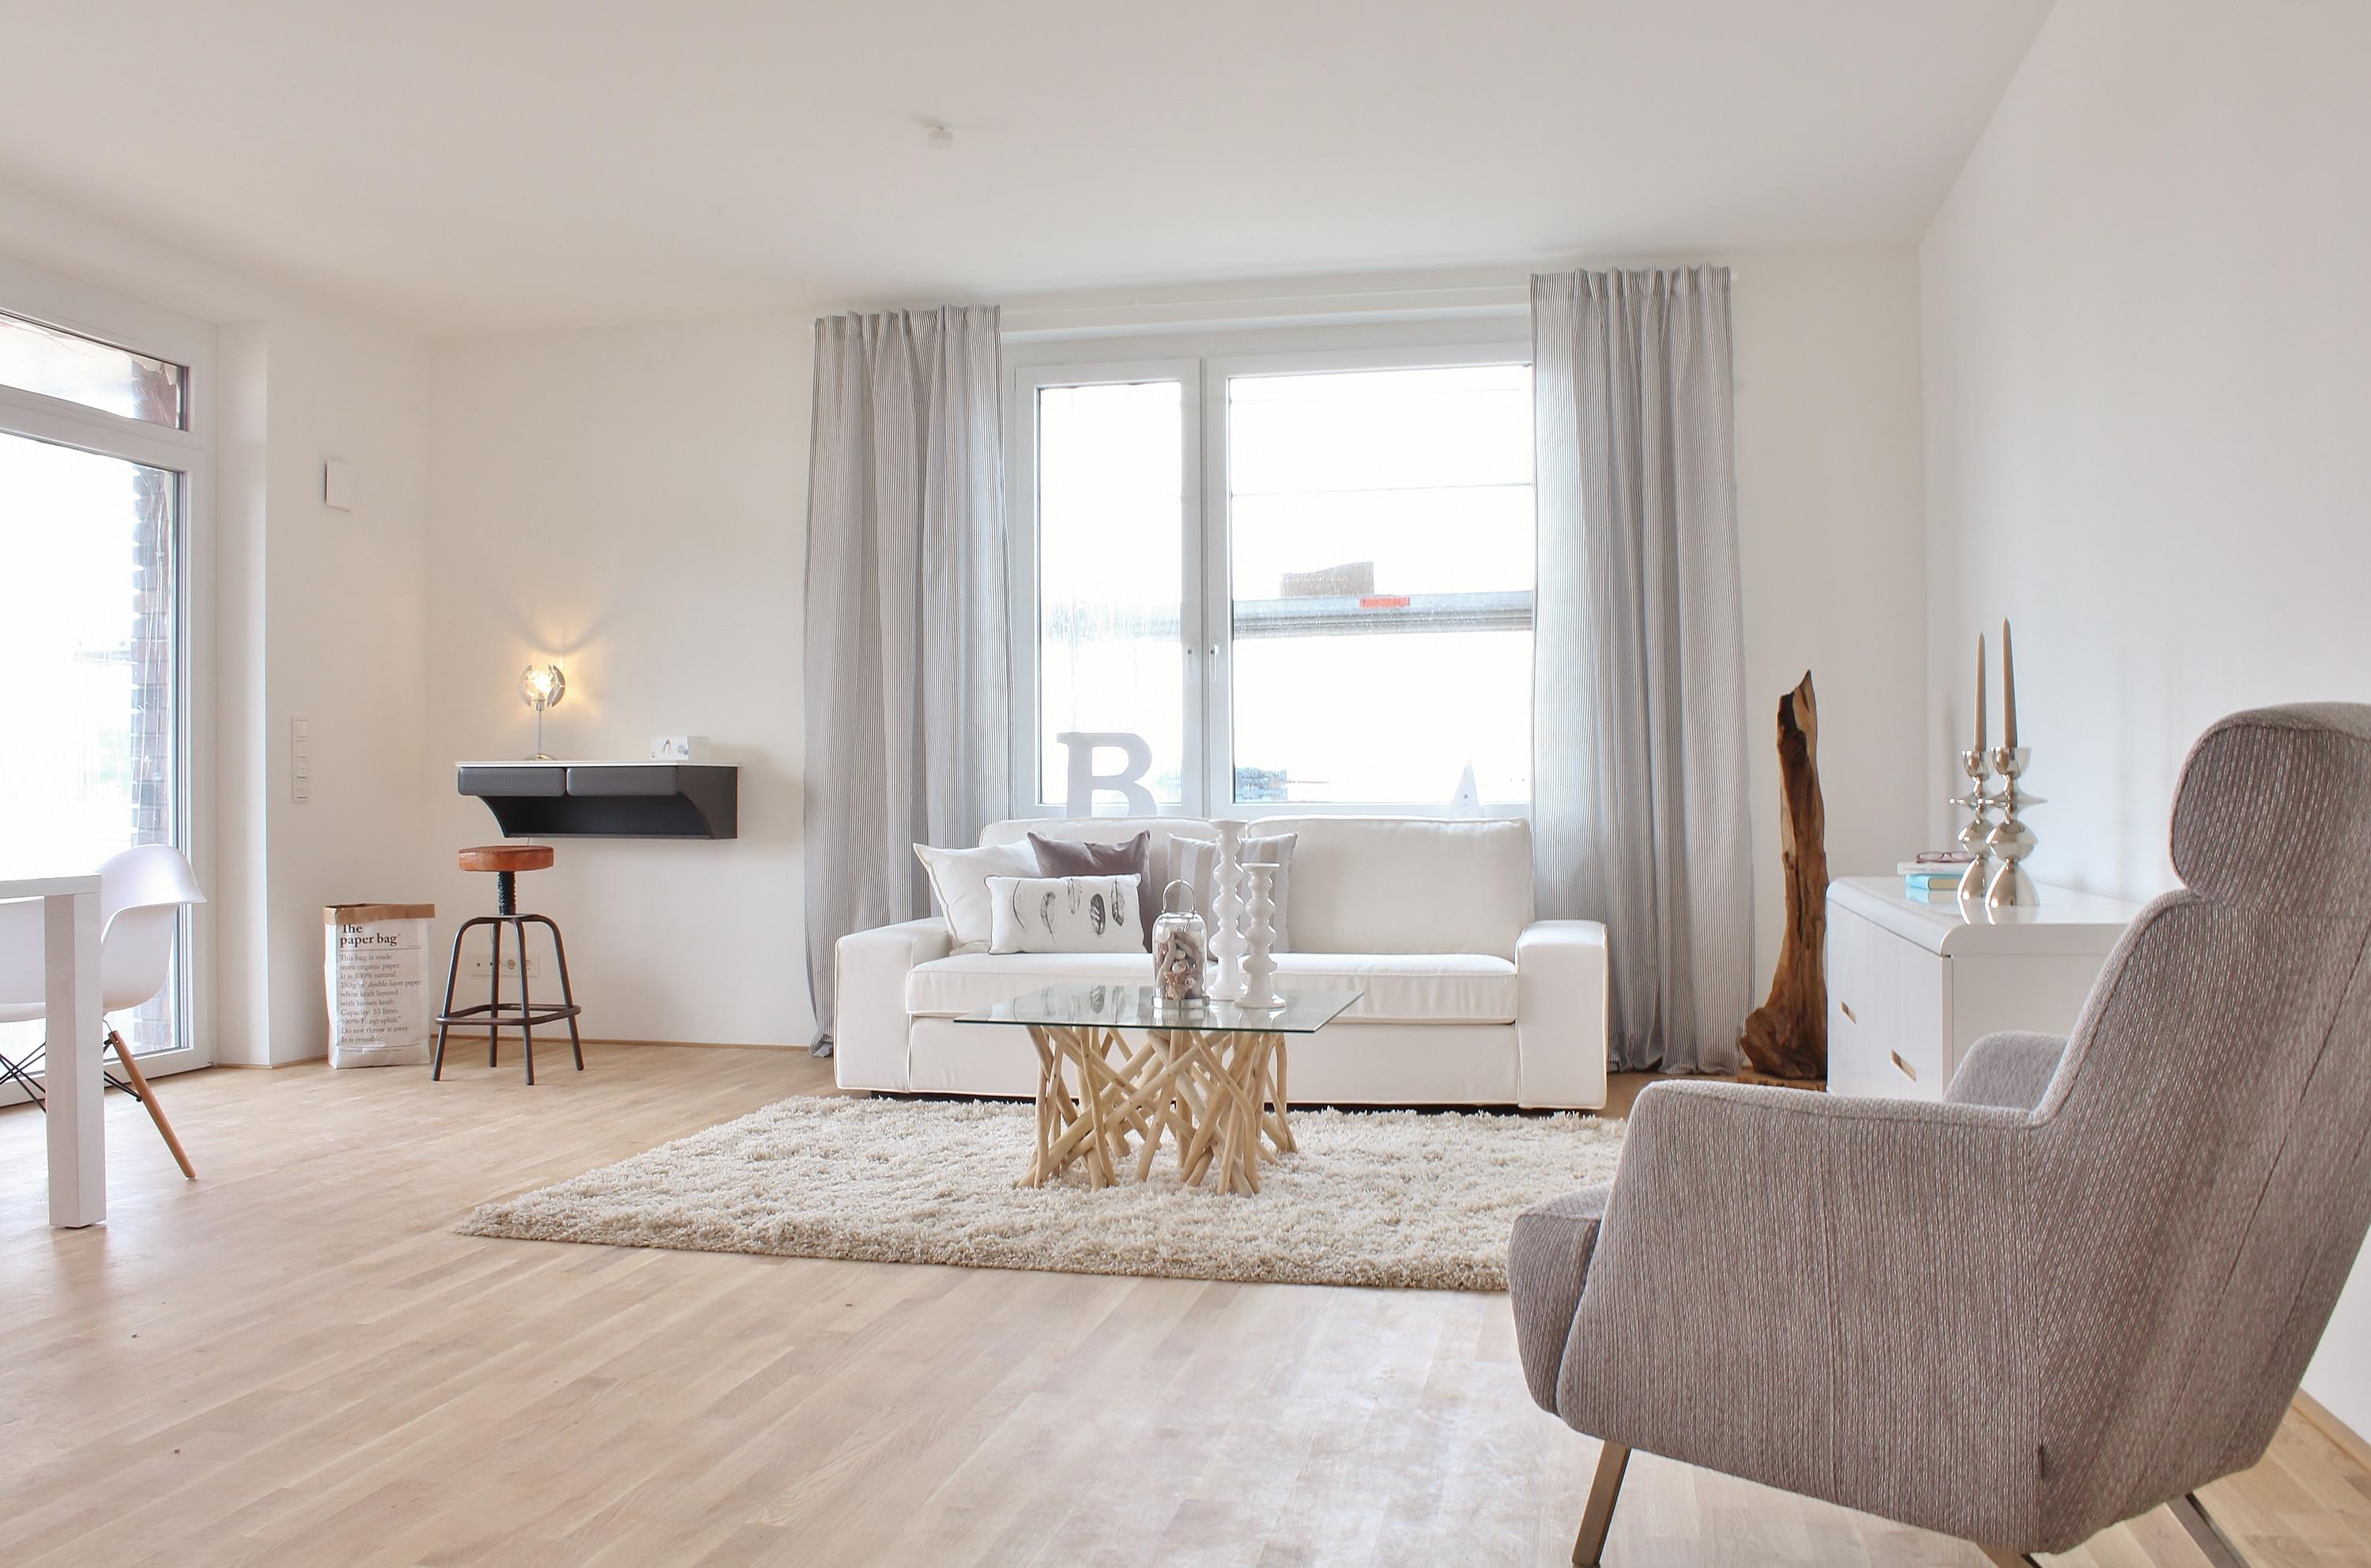 Weißes Sofa mit Strandfeeling #glastisch #lowboard ©Nicole Schütz Home Staging